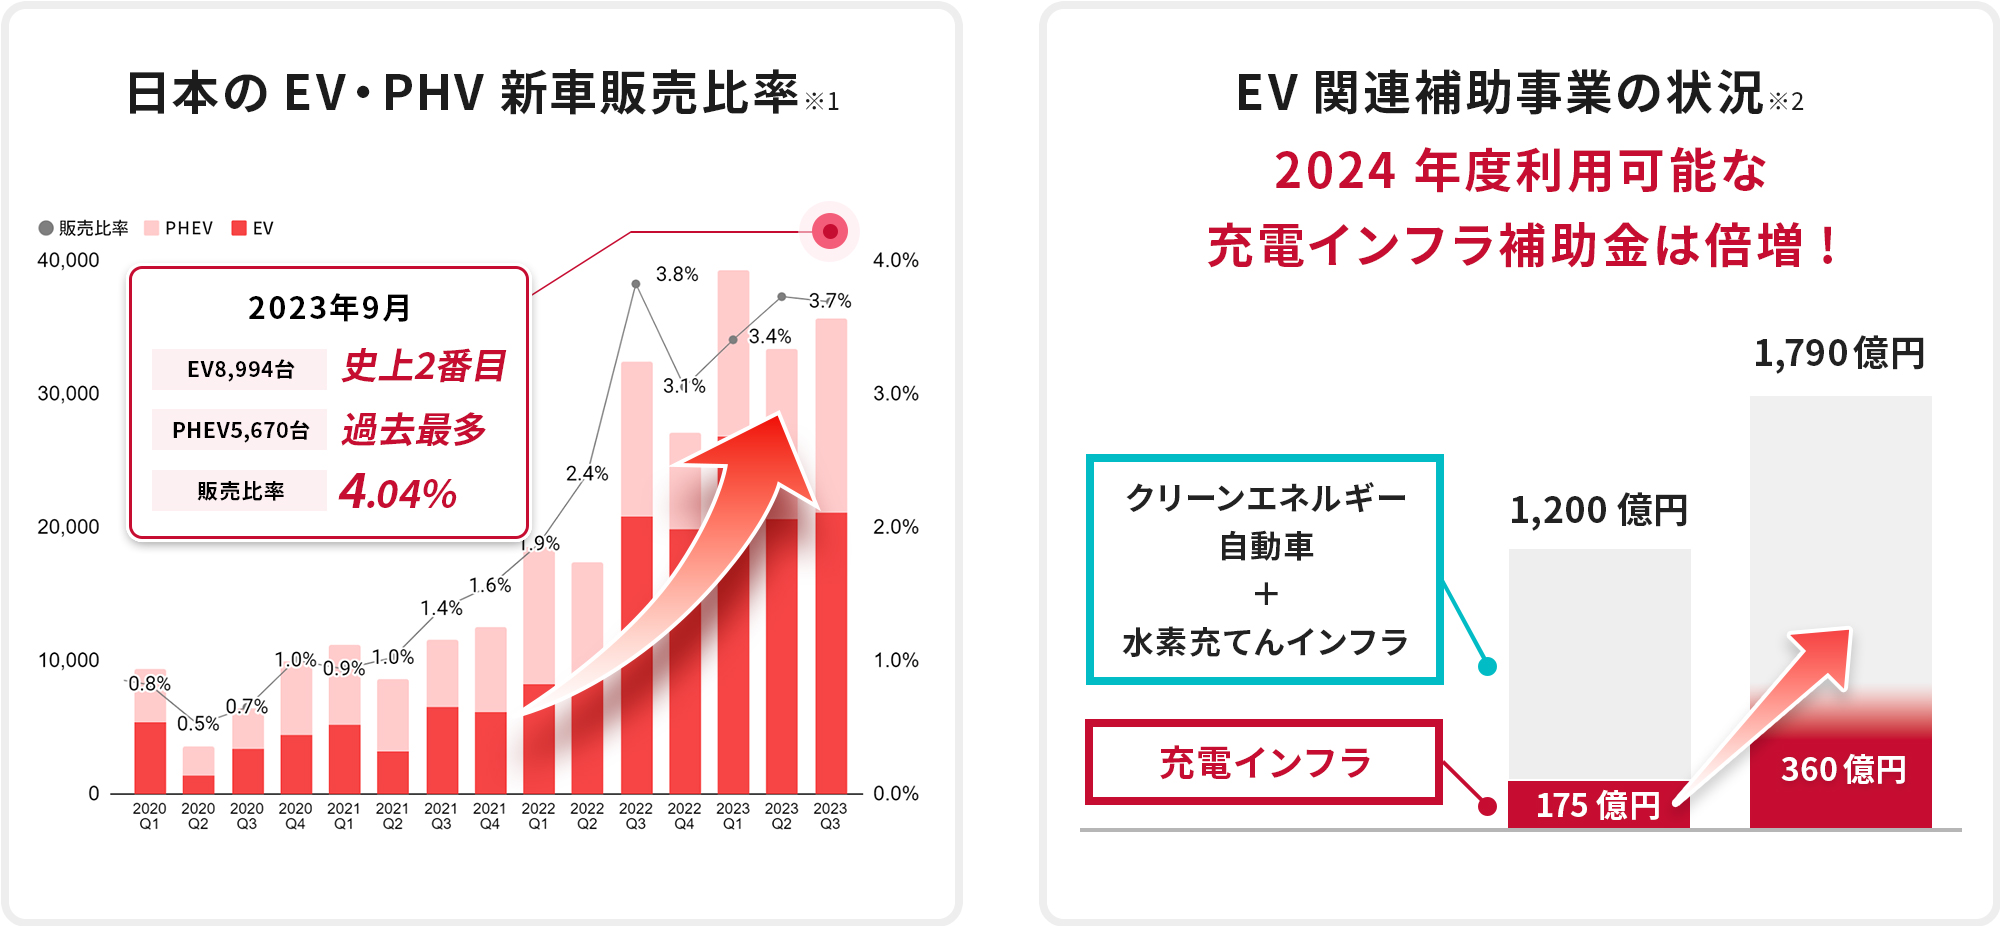 日本のEV・PHV新車販売比率 EV関連補助事業の状況